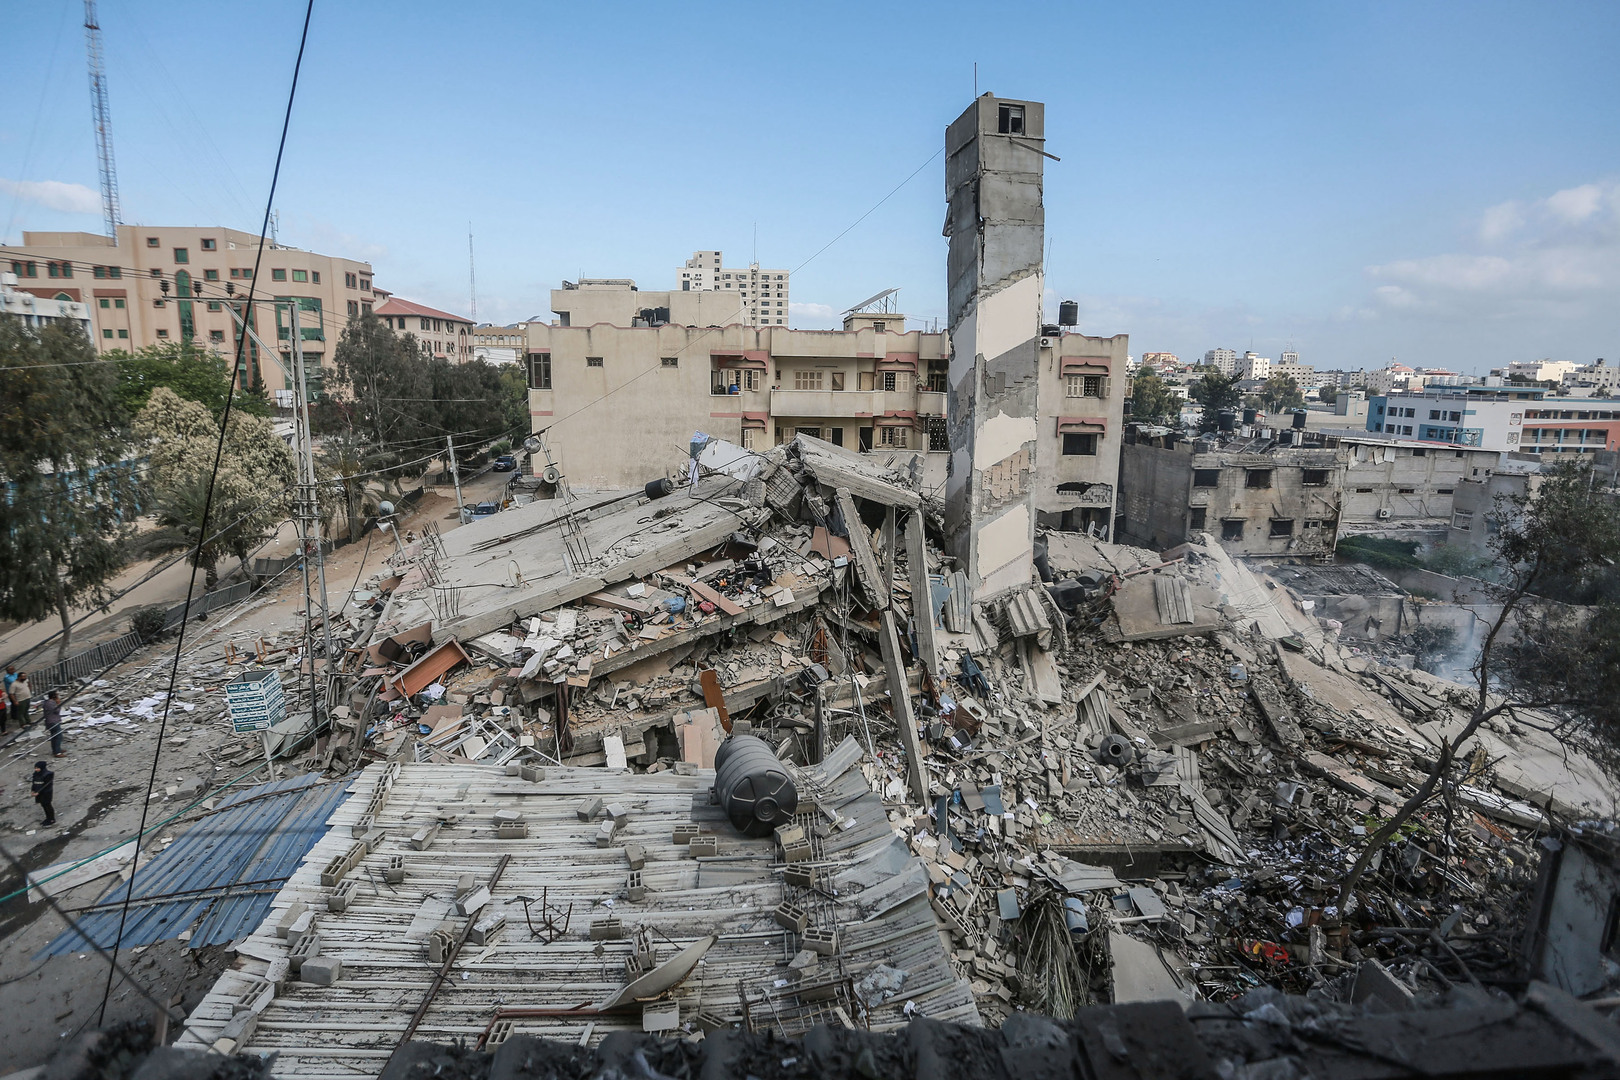 صحيفة: إسرائيل تتراجع عن شرط إعادة تأهيل قطاع غزة مقابل إنهاء قضية الأسرى والمفقودين الإسرائيليين